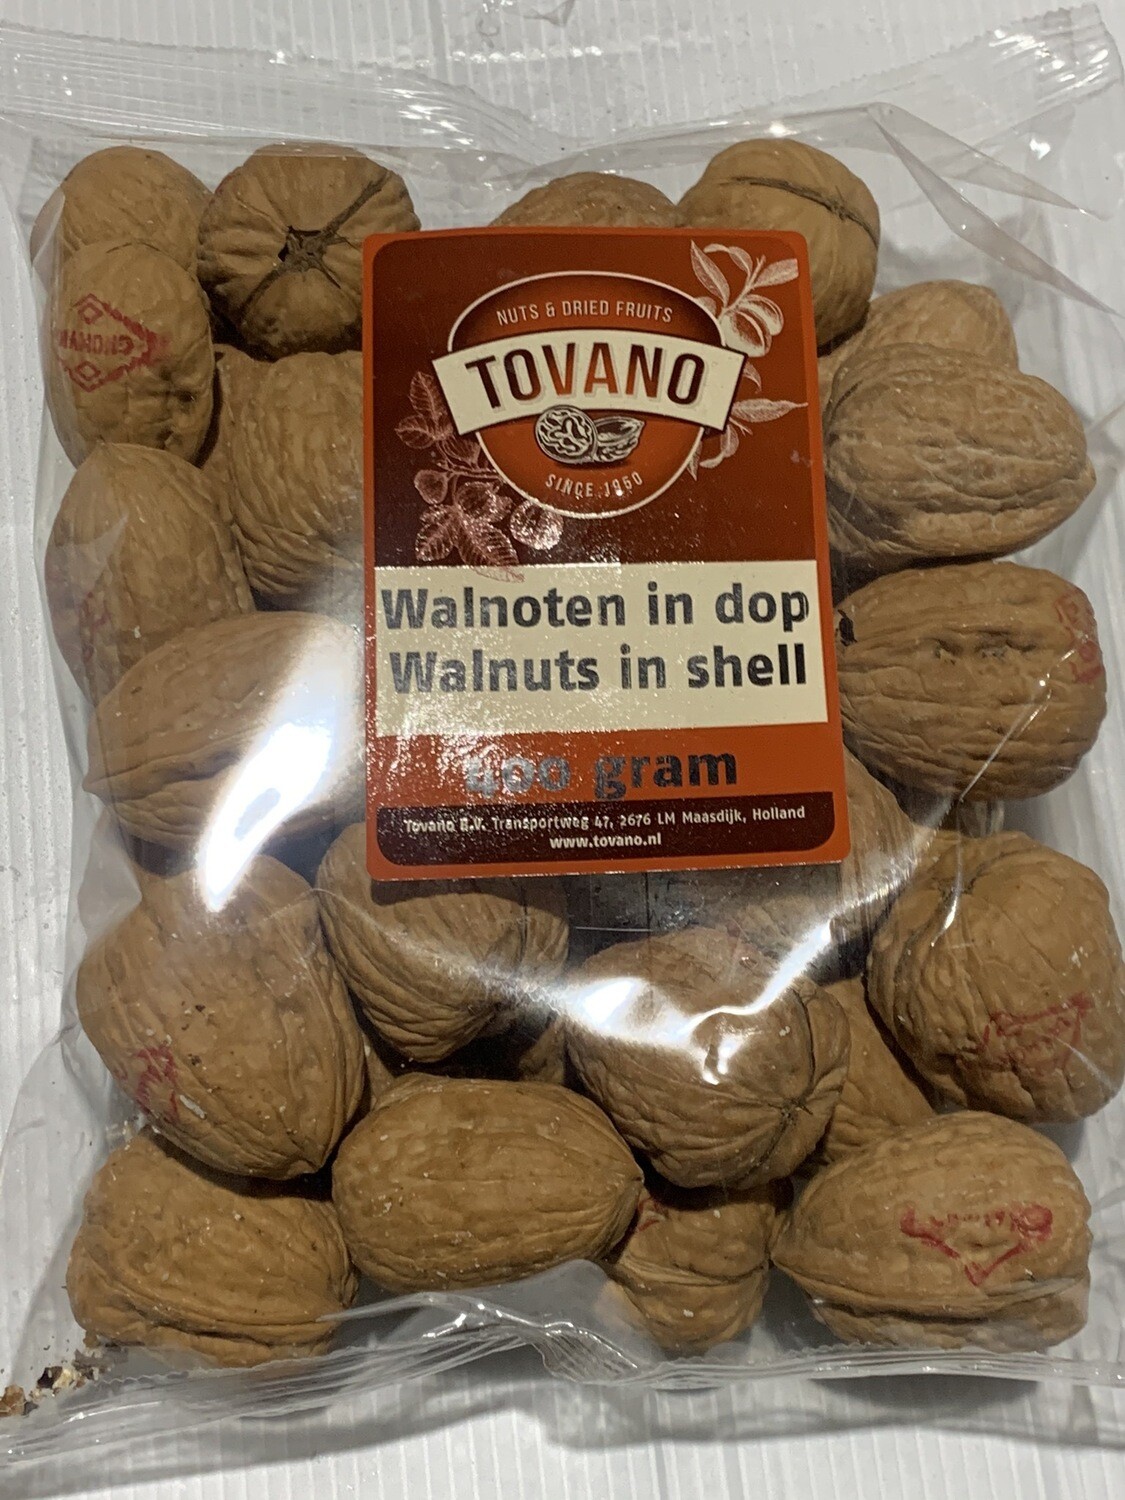 Walnuts